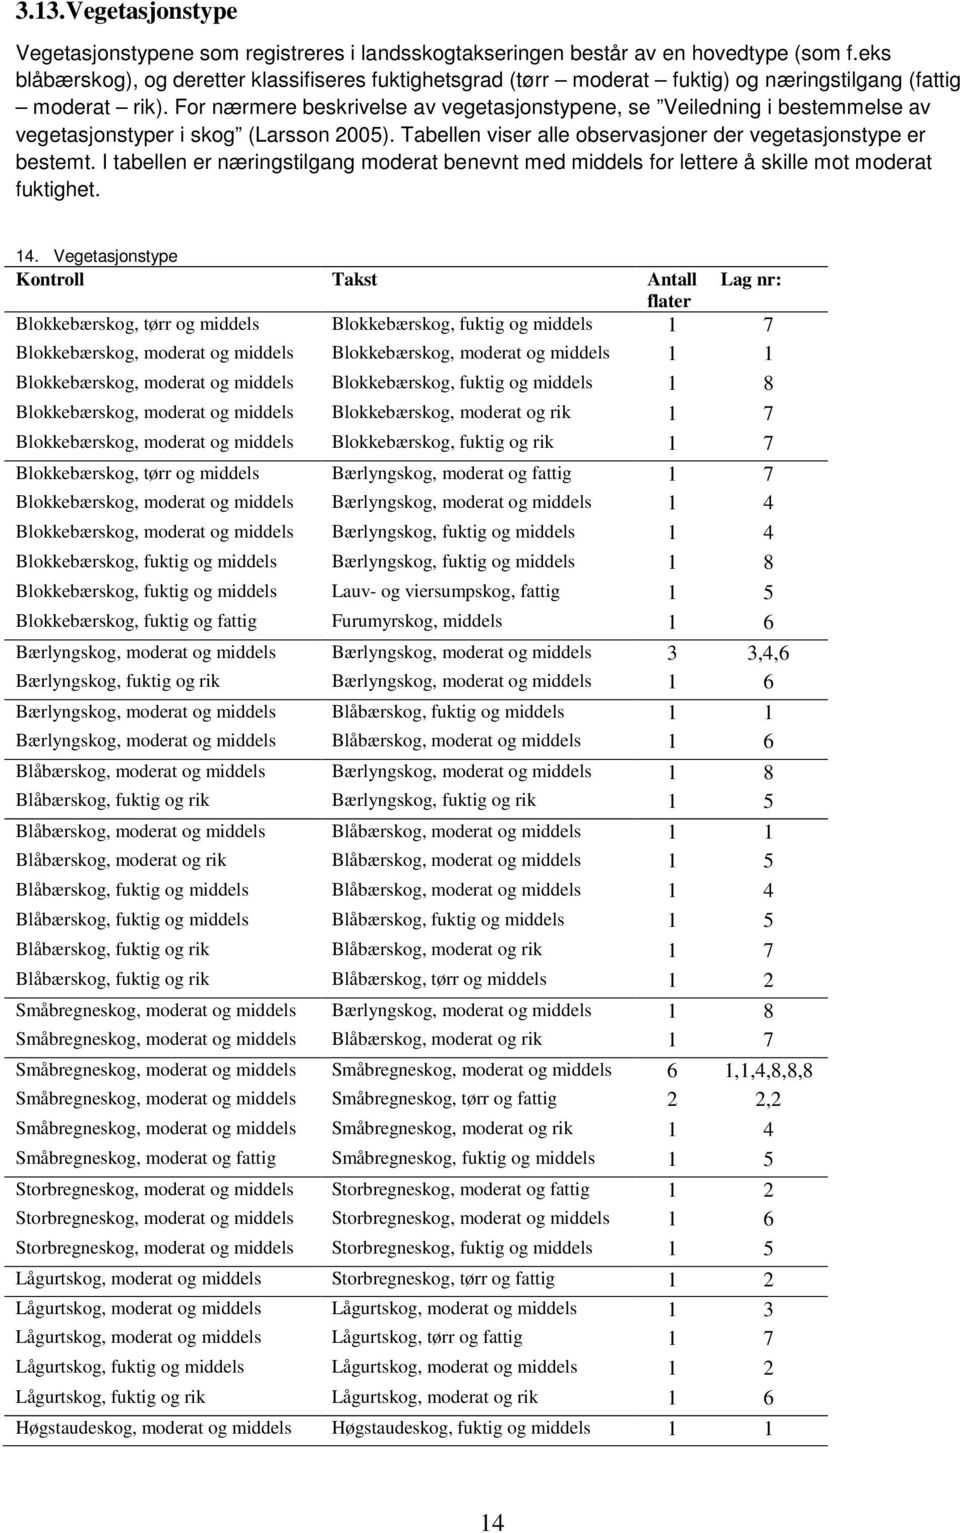 For nærmere beskrivelse av vegetasjonstypene, se Veiledning i bestemmelse av vegetasjonstyper i skog (Larsson 25). Tabellen viser alle observasjoner der vegetasjonstype er bestemt.